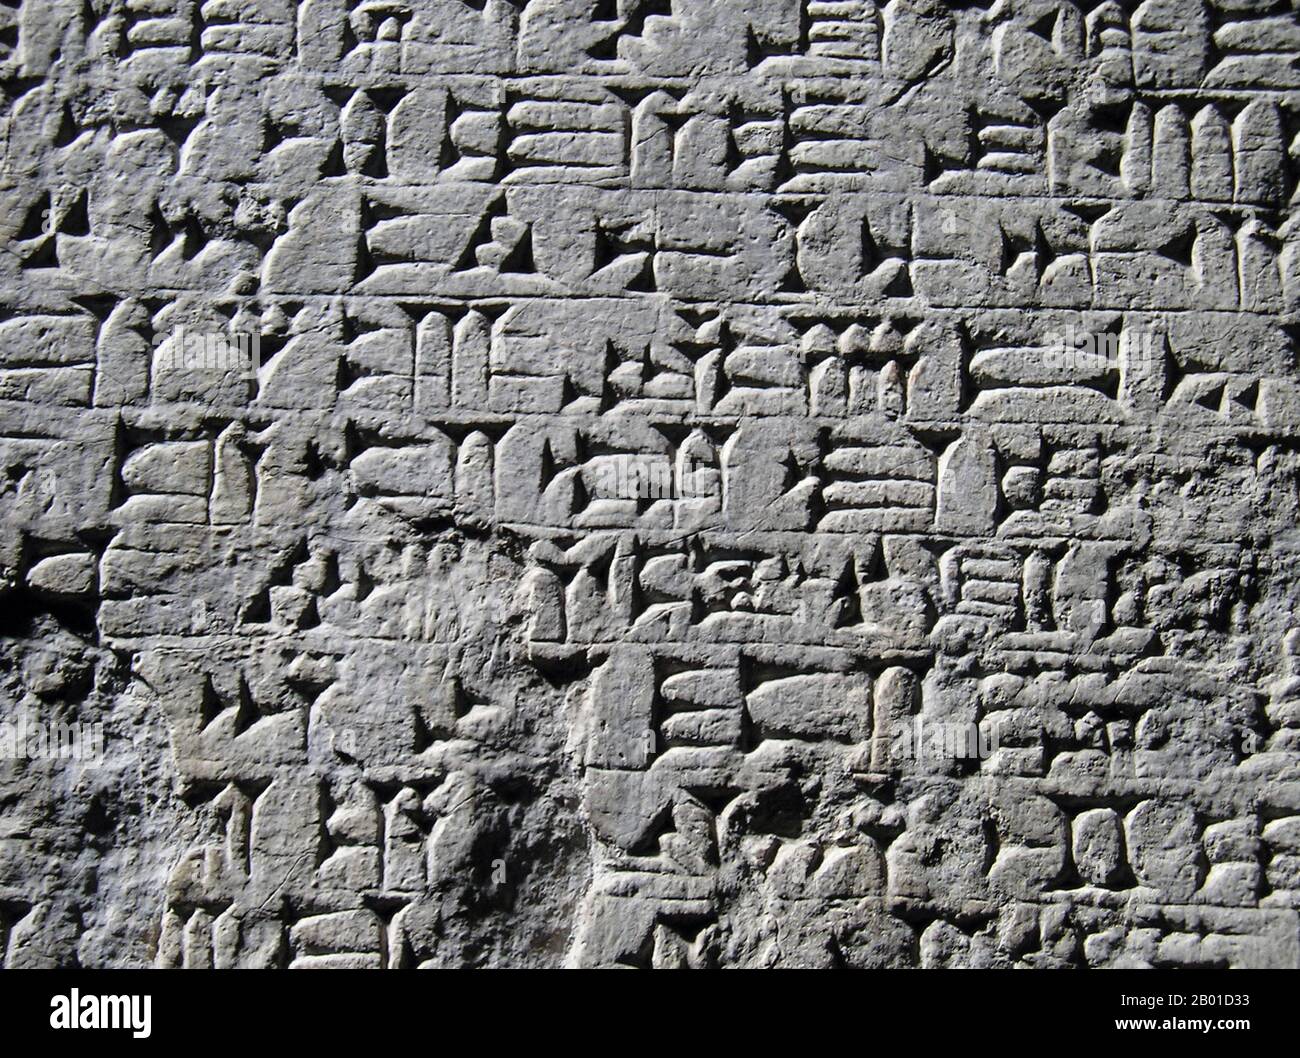 Iraq: Dettaglio della scrittura cuneiforme Akkadiana, c.. 2500 A.C. Lo script cuneiforme è una delle prime forme note di espressione scritta. Emergendo a Sumer intorno al 30th ° secolo AC, con i predecessori che raggiungono la fine del 4th ° millennio (il periodo Uruk IV), la scrittura cuneiforme ha iniziato come un sistema di pittogrammi. Nei tre millenni che lo script ha abbracciato, le rappresentazioni pittoriche sono diventate semplificate e più astratte, in quanto anche il numero di caratteri in uso è cresciuto gradualmente, da circa 1.000 caratteri unici nell'età del Bronzo precoce a circa 400 caratteri unici nell'età del Bronzo tardo. Foto Stock